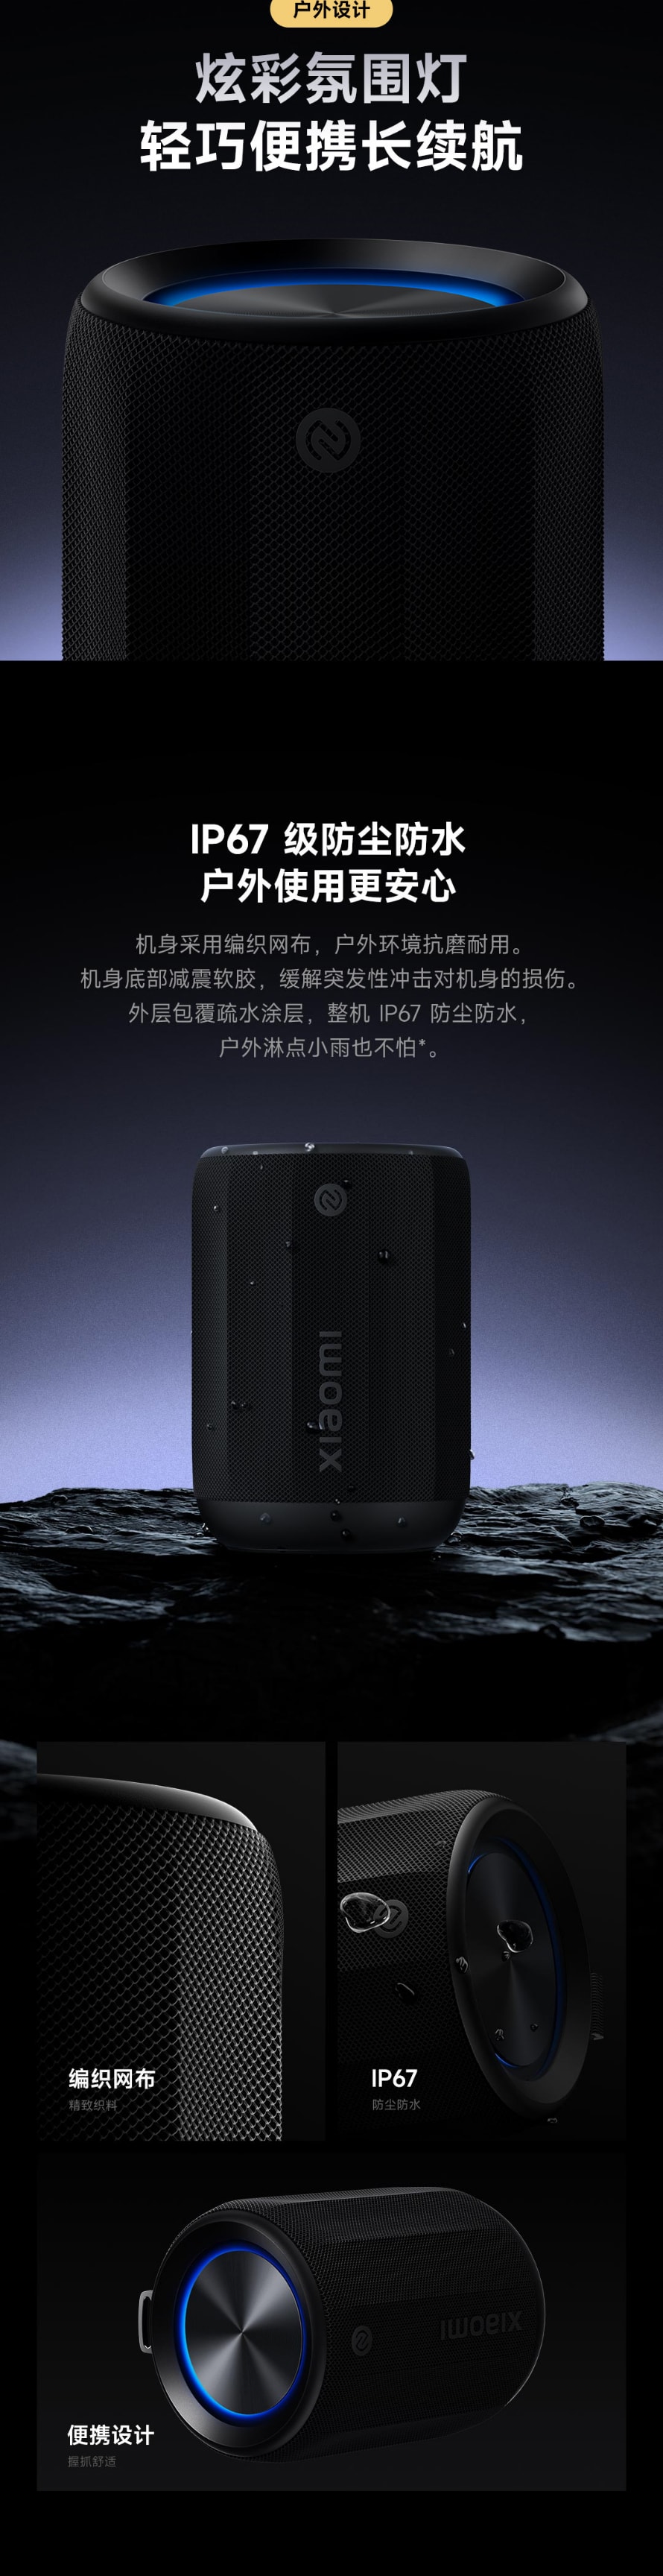 【中国直邮】小米有品 Xiaomi 蓝牙音箱 Mini 黑色